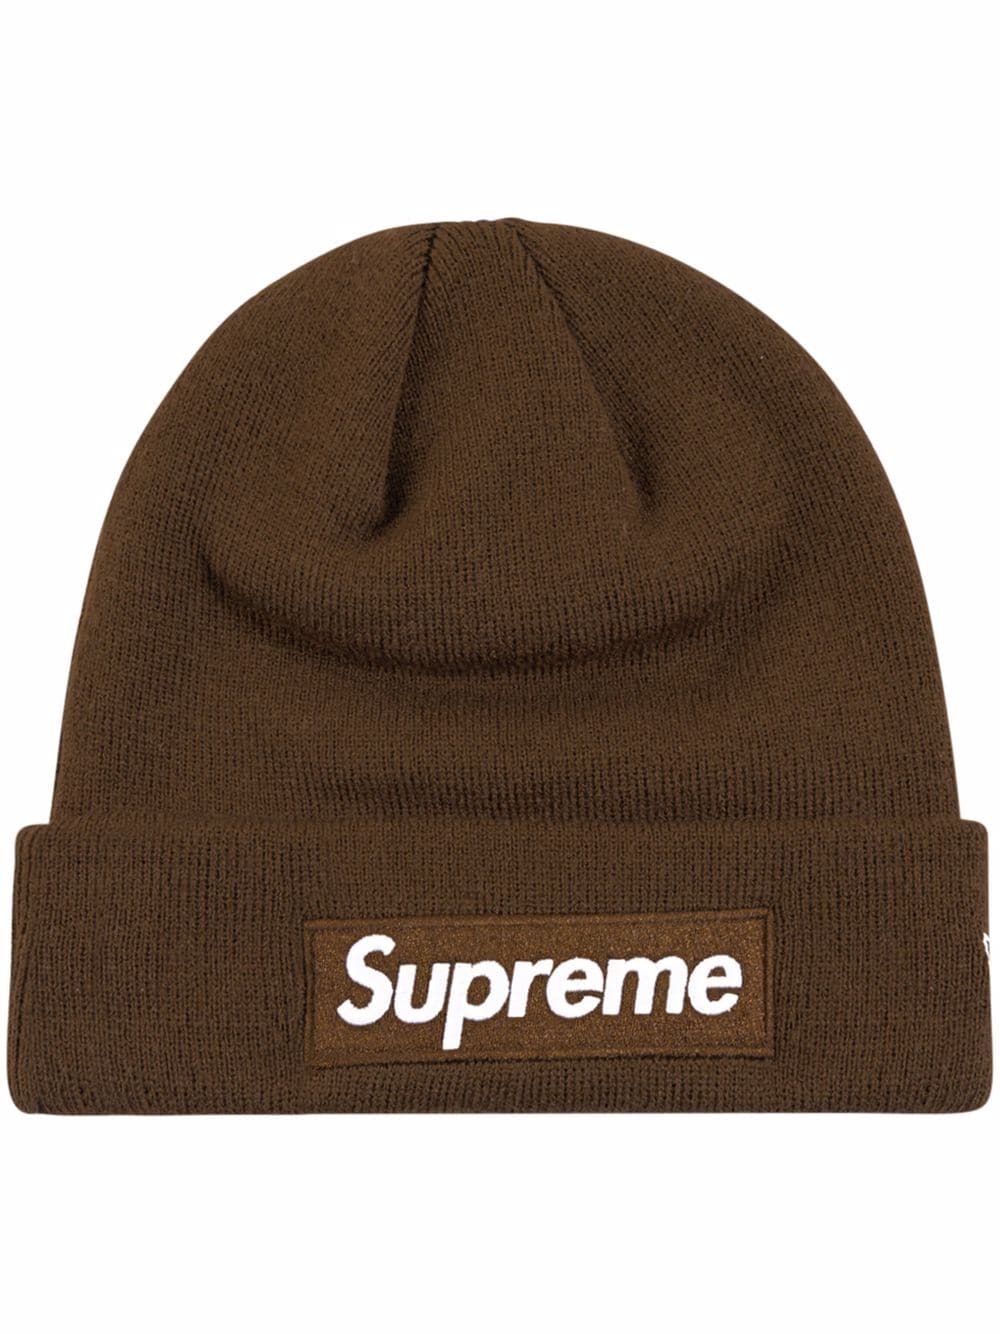 Supreme x New Era Mütze mit Logo - Braun von Supreme